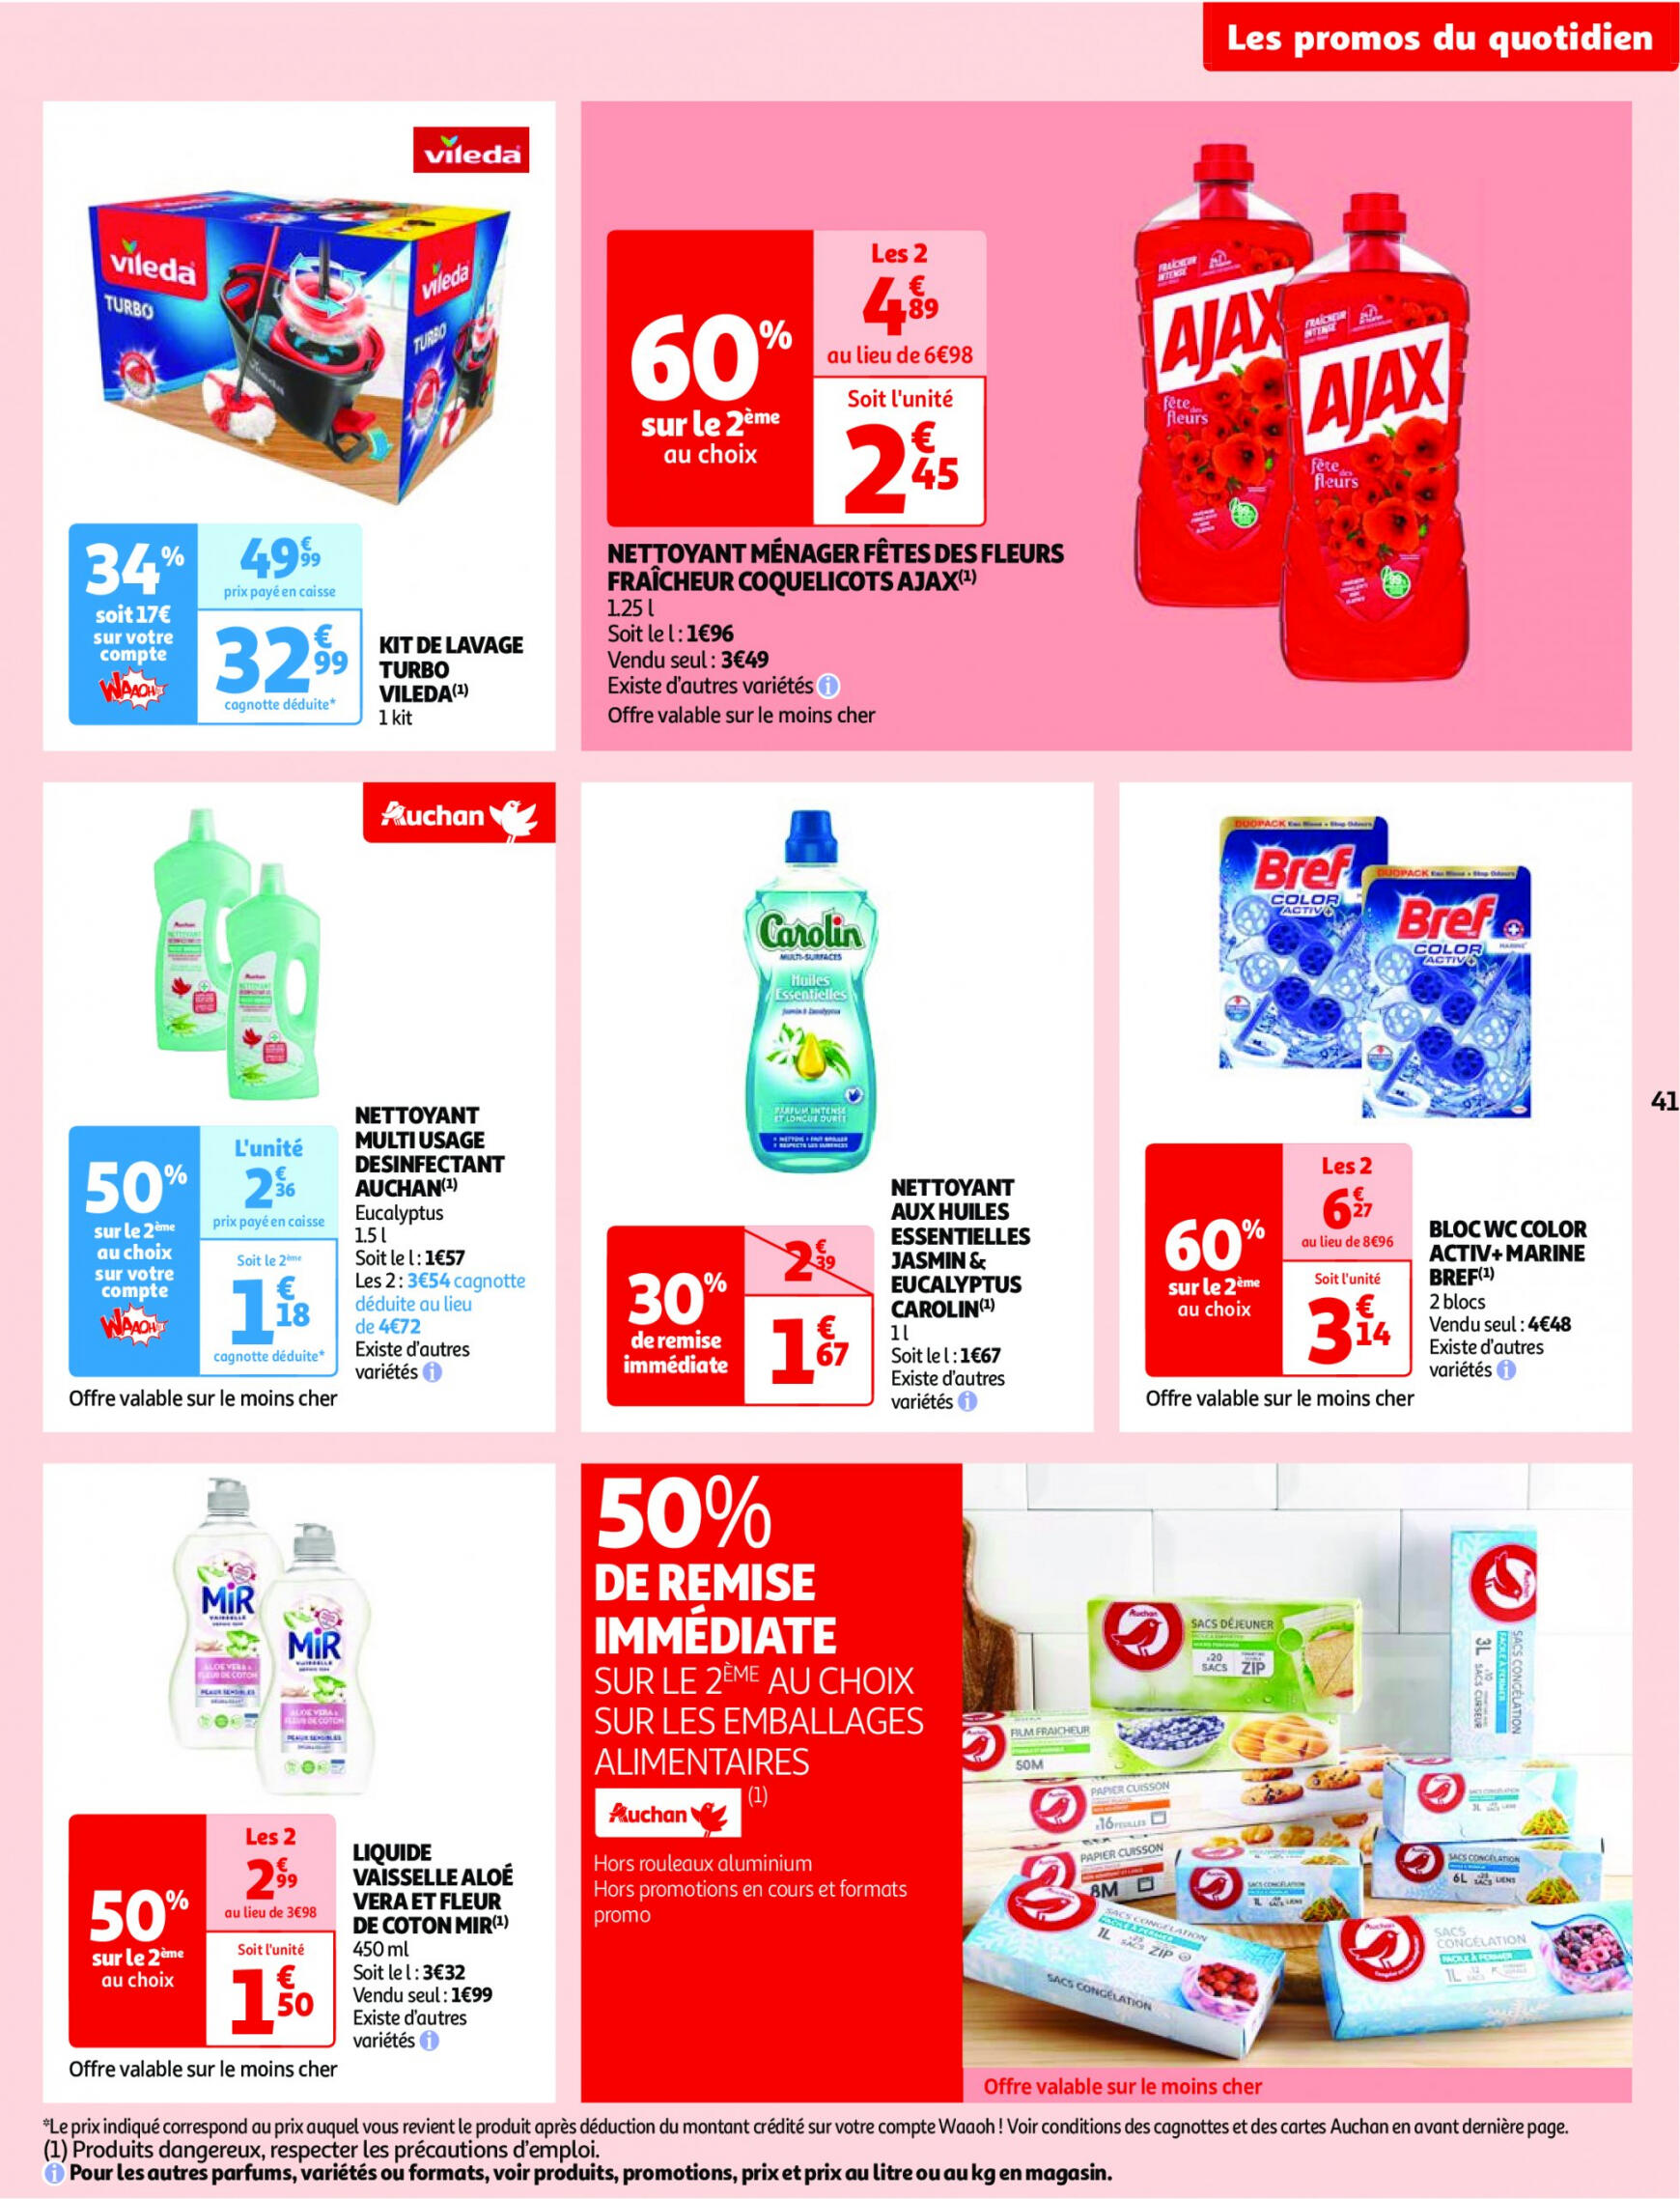 auchan - Prospectus Auchan actuel 14.05. - 21.05. - page: 41